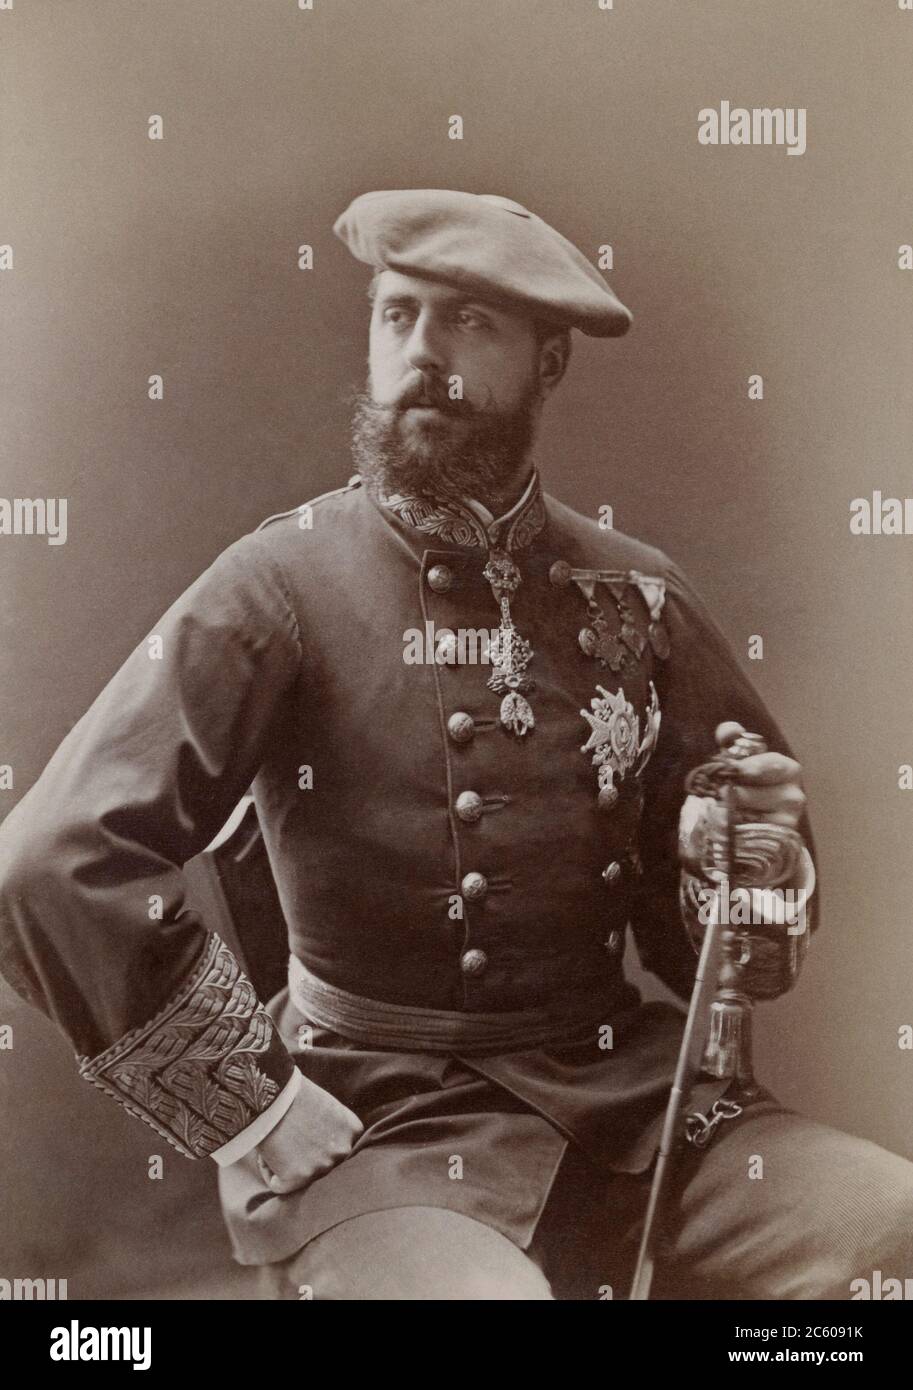 Don Carlos, Herzog von Madrid (1848 – 1909) war von 1887 bis zu seinem Tod das leitende Mitglied des Hauses Bourbon. Er war der Carlist Kläger auf die t Stockfoto